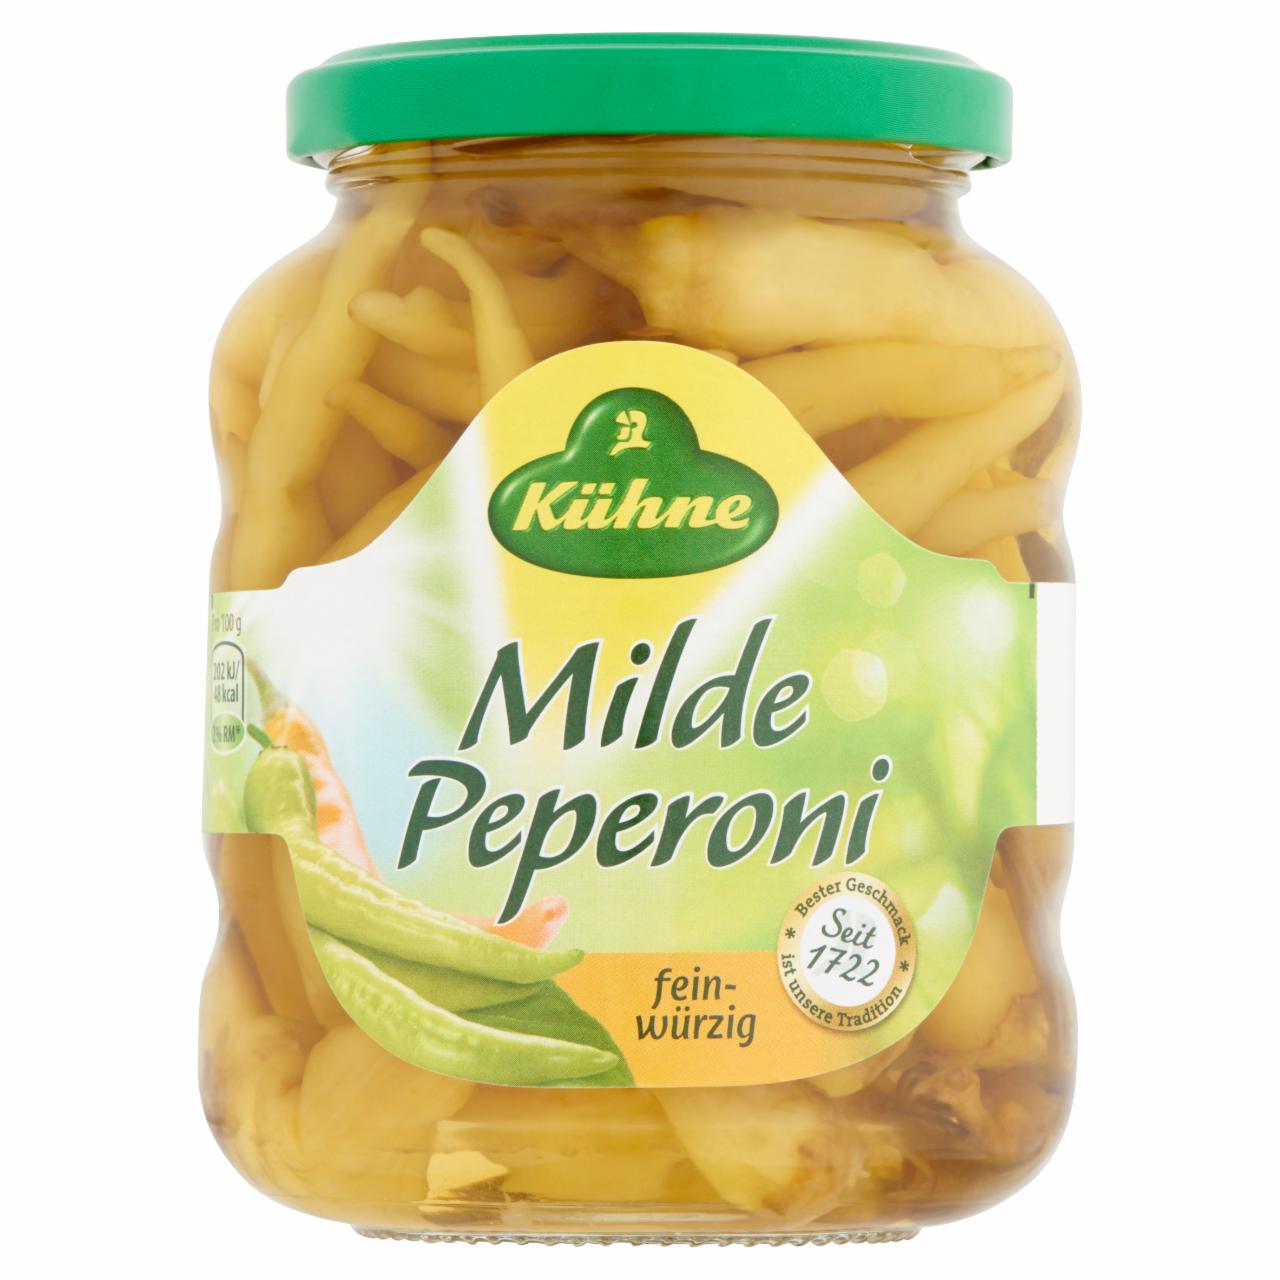 Képek - Kühne enyhén csípős zöld pepperóni